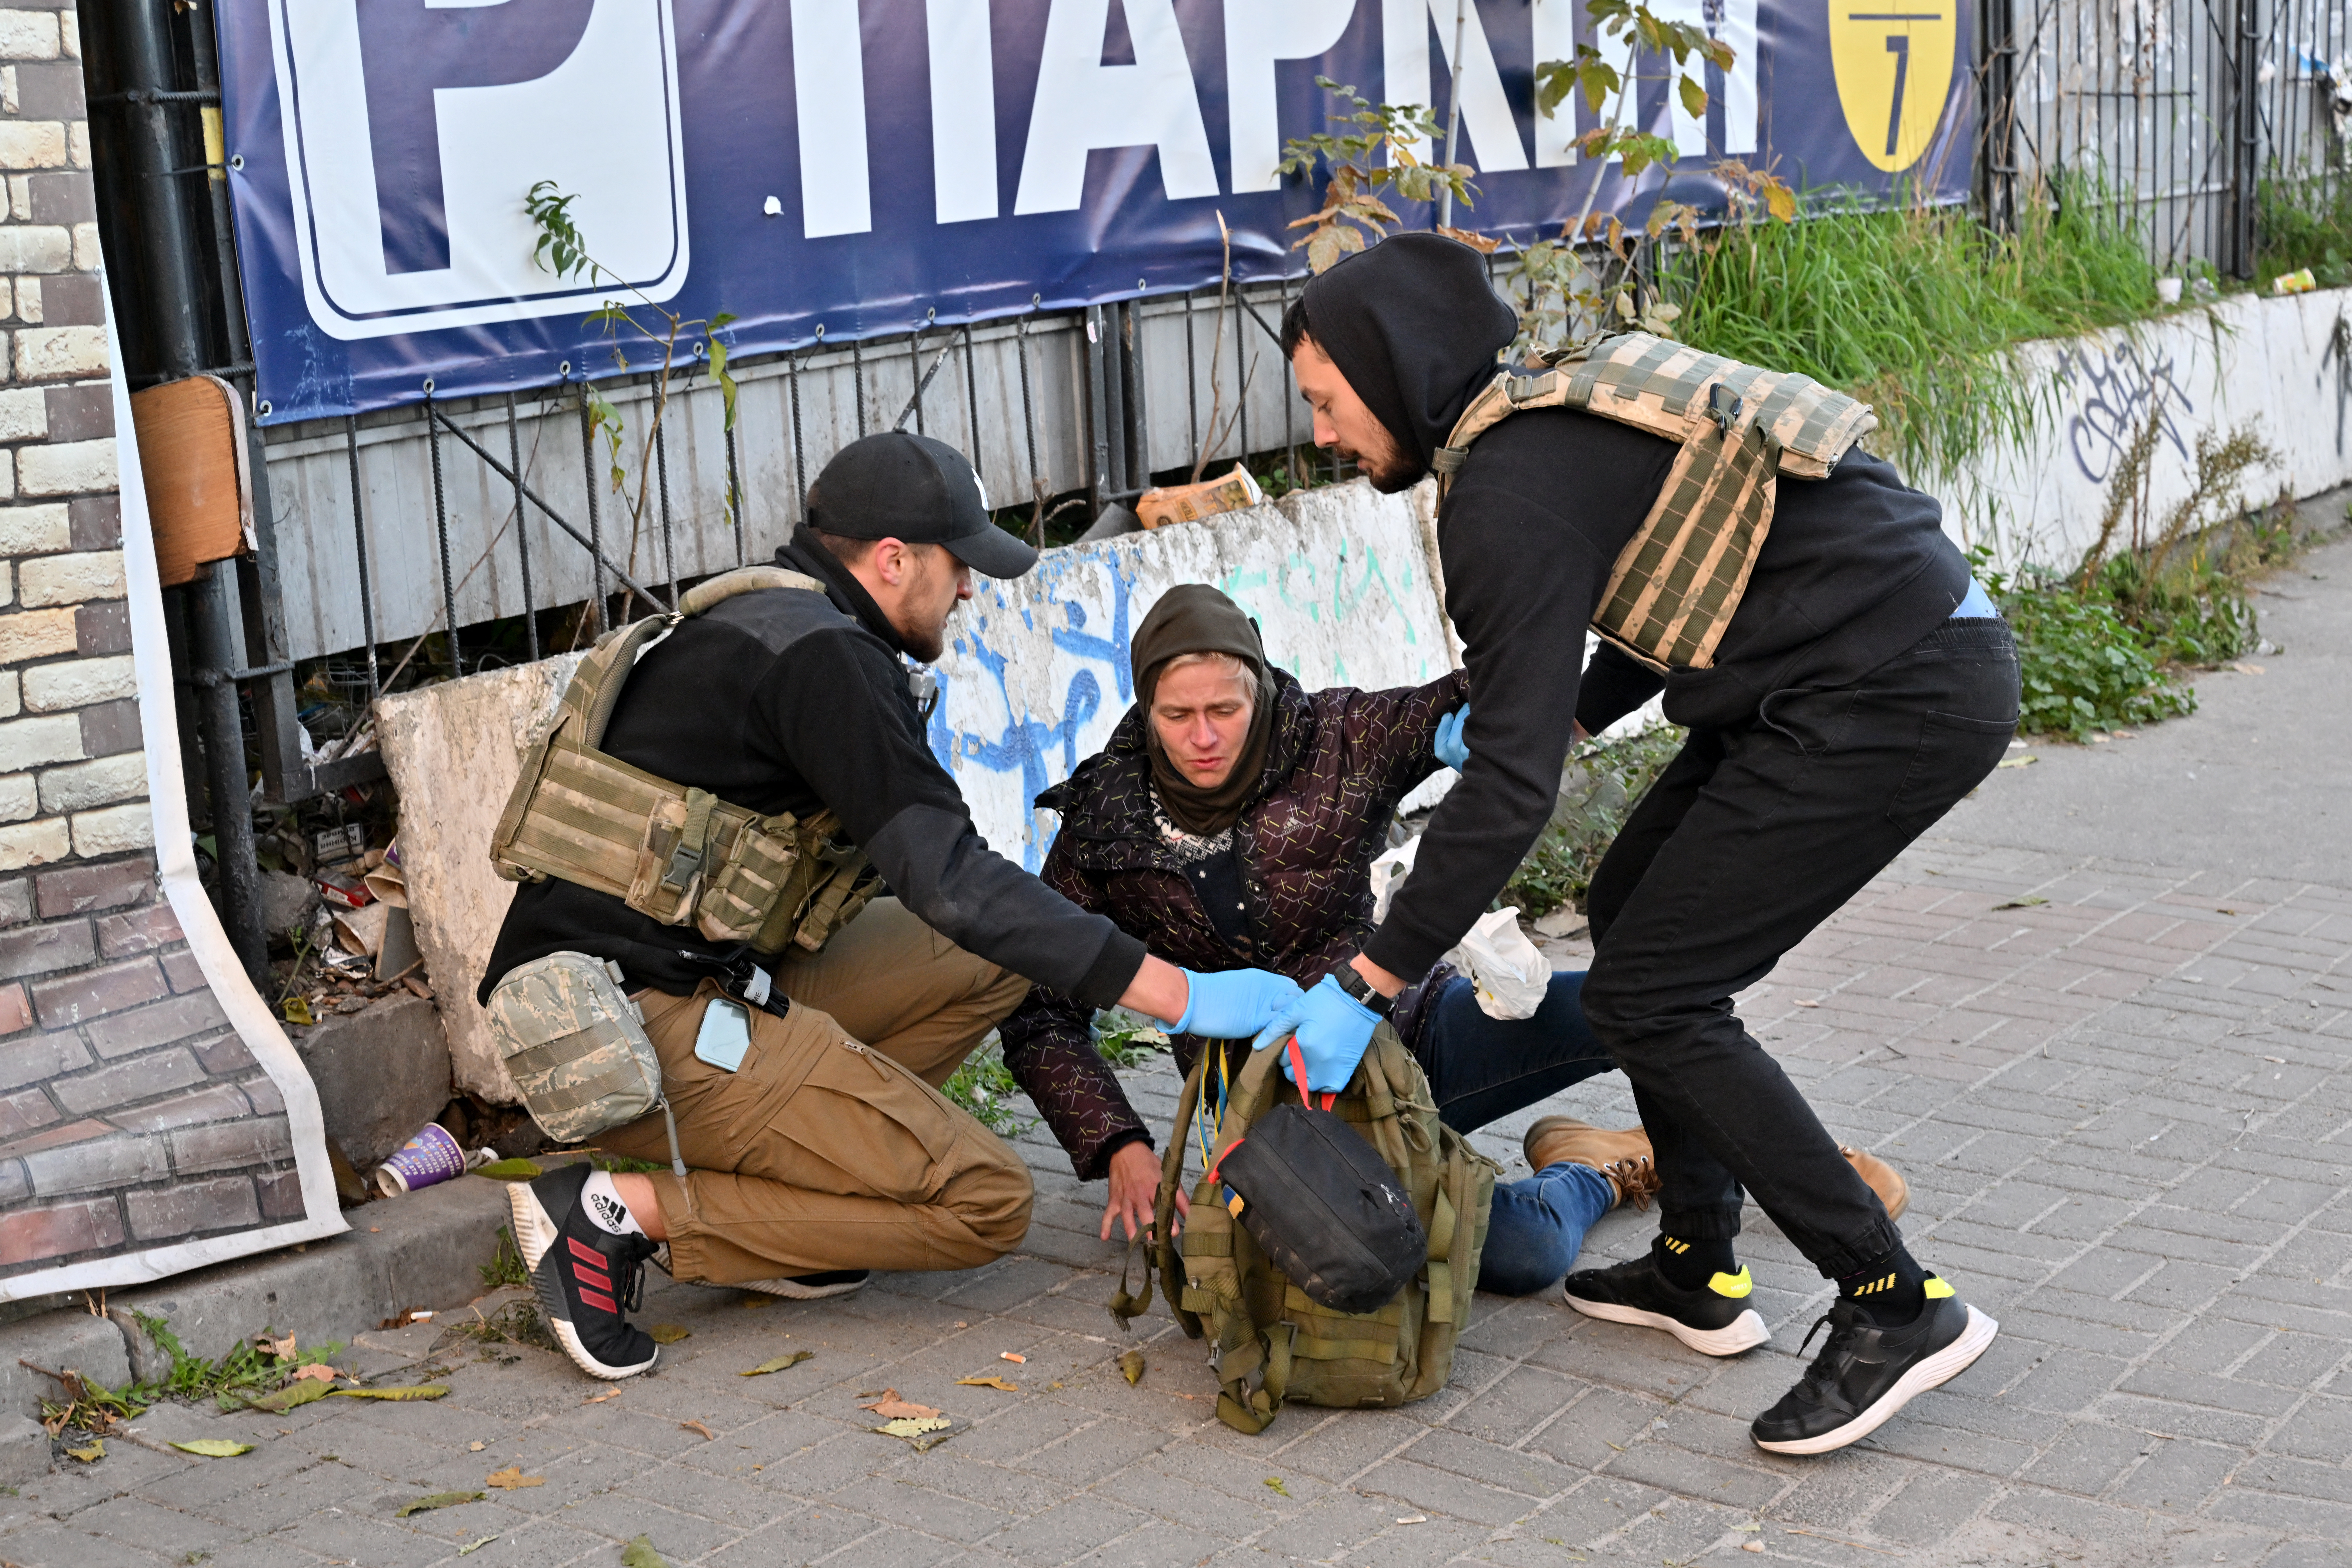 Personas médico socorre a una mujer herida en uno de los ataques (Sergei SUPINSKY / AFP)